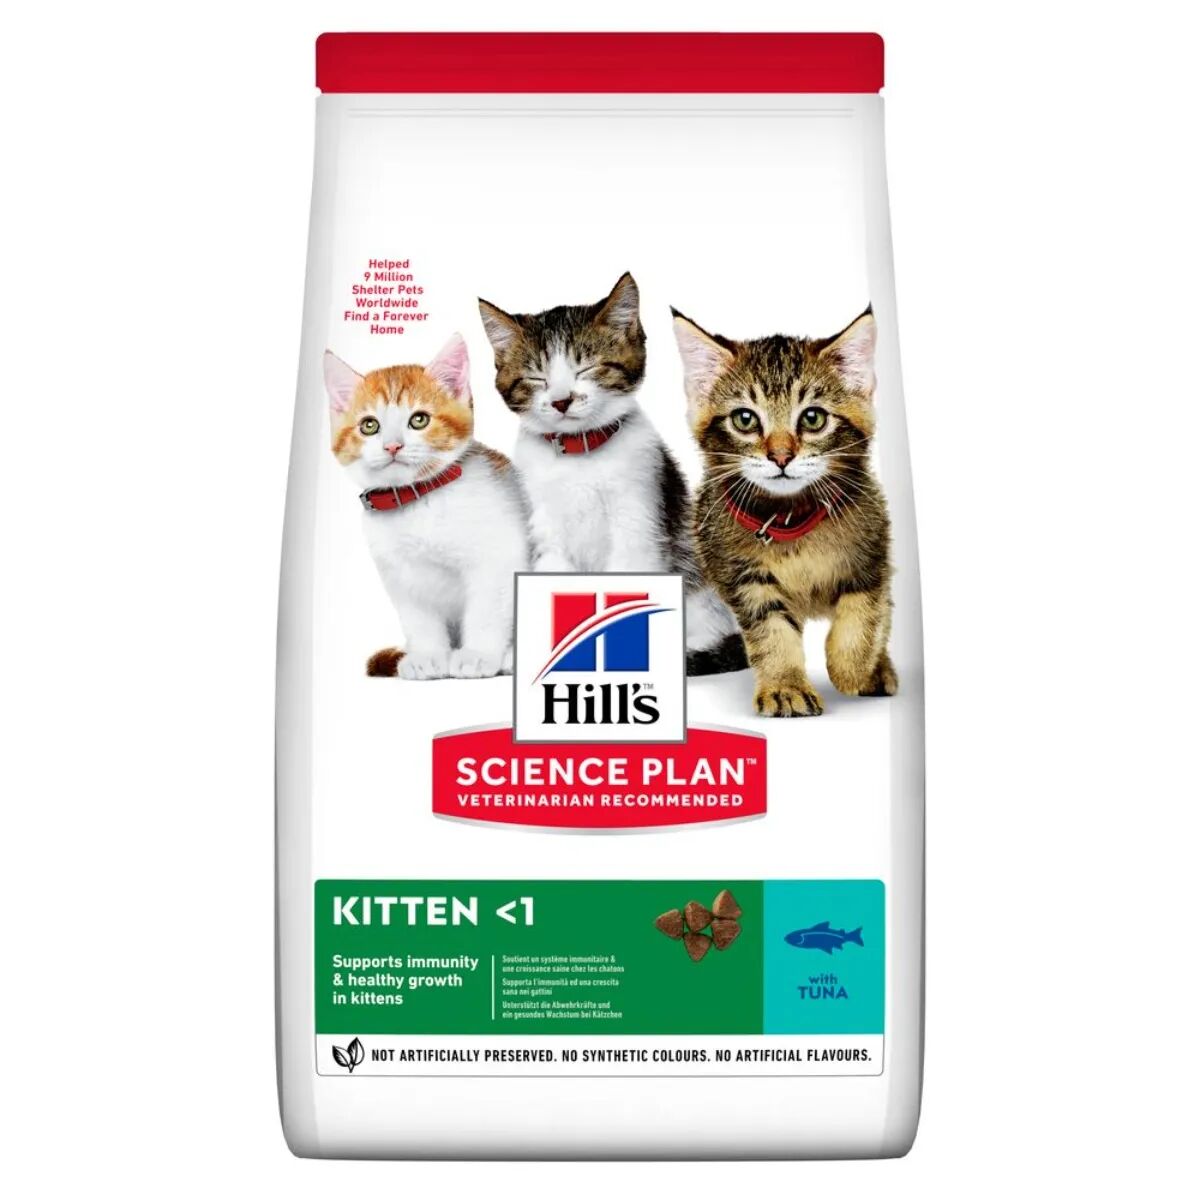 HILLS Hill's Science Plan Kitten Alimento per Gattini con Tonno 1.5KG